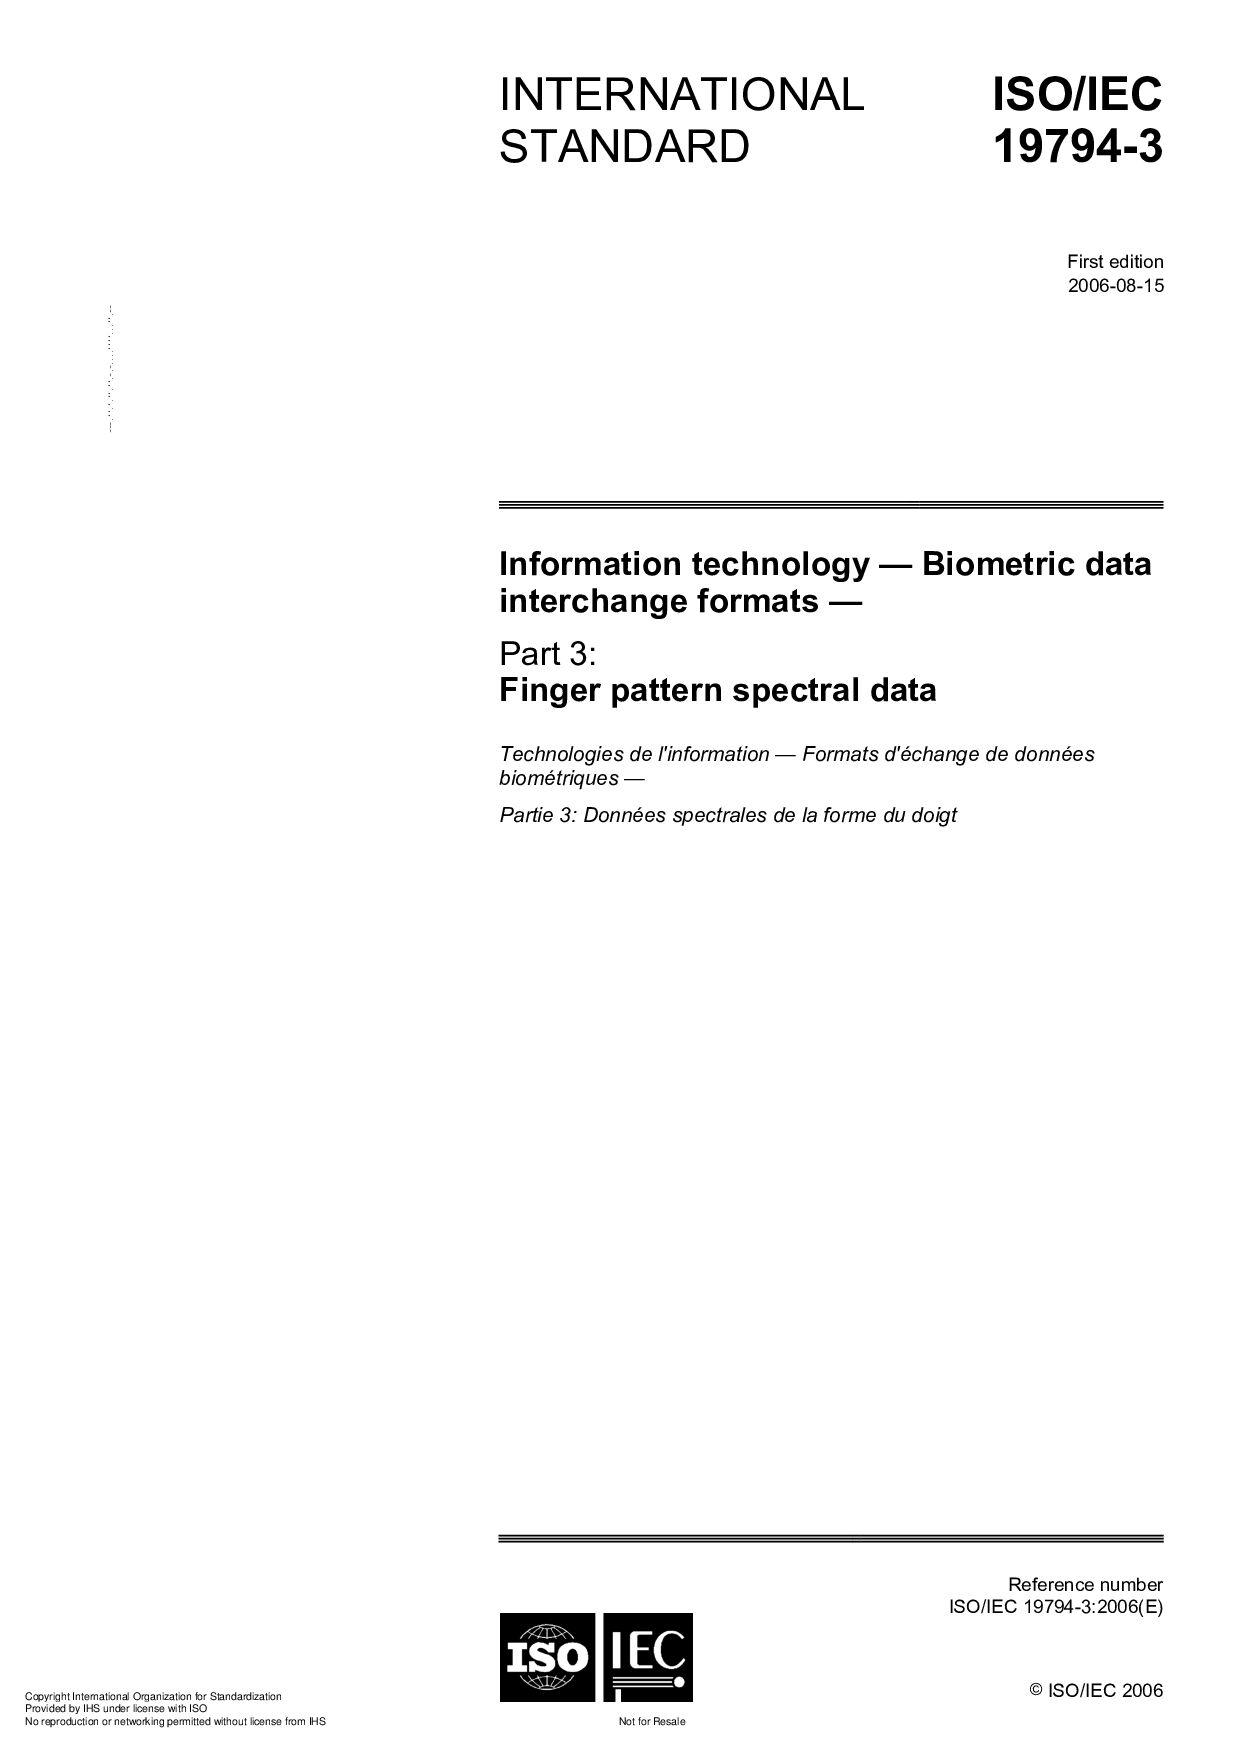 ISO/IEC 19794-3:2006封面图